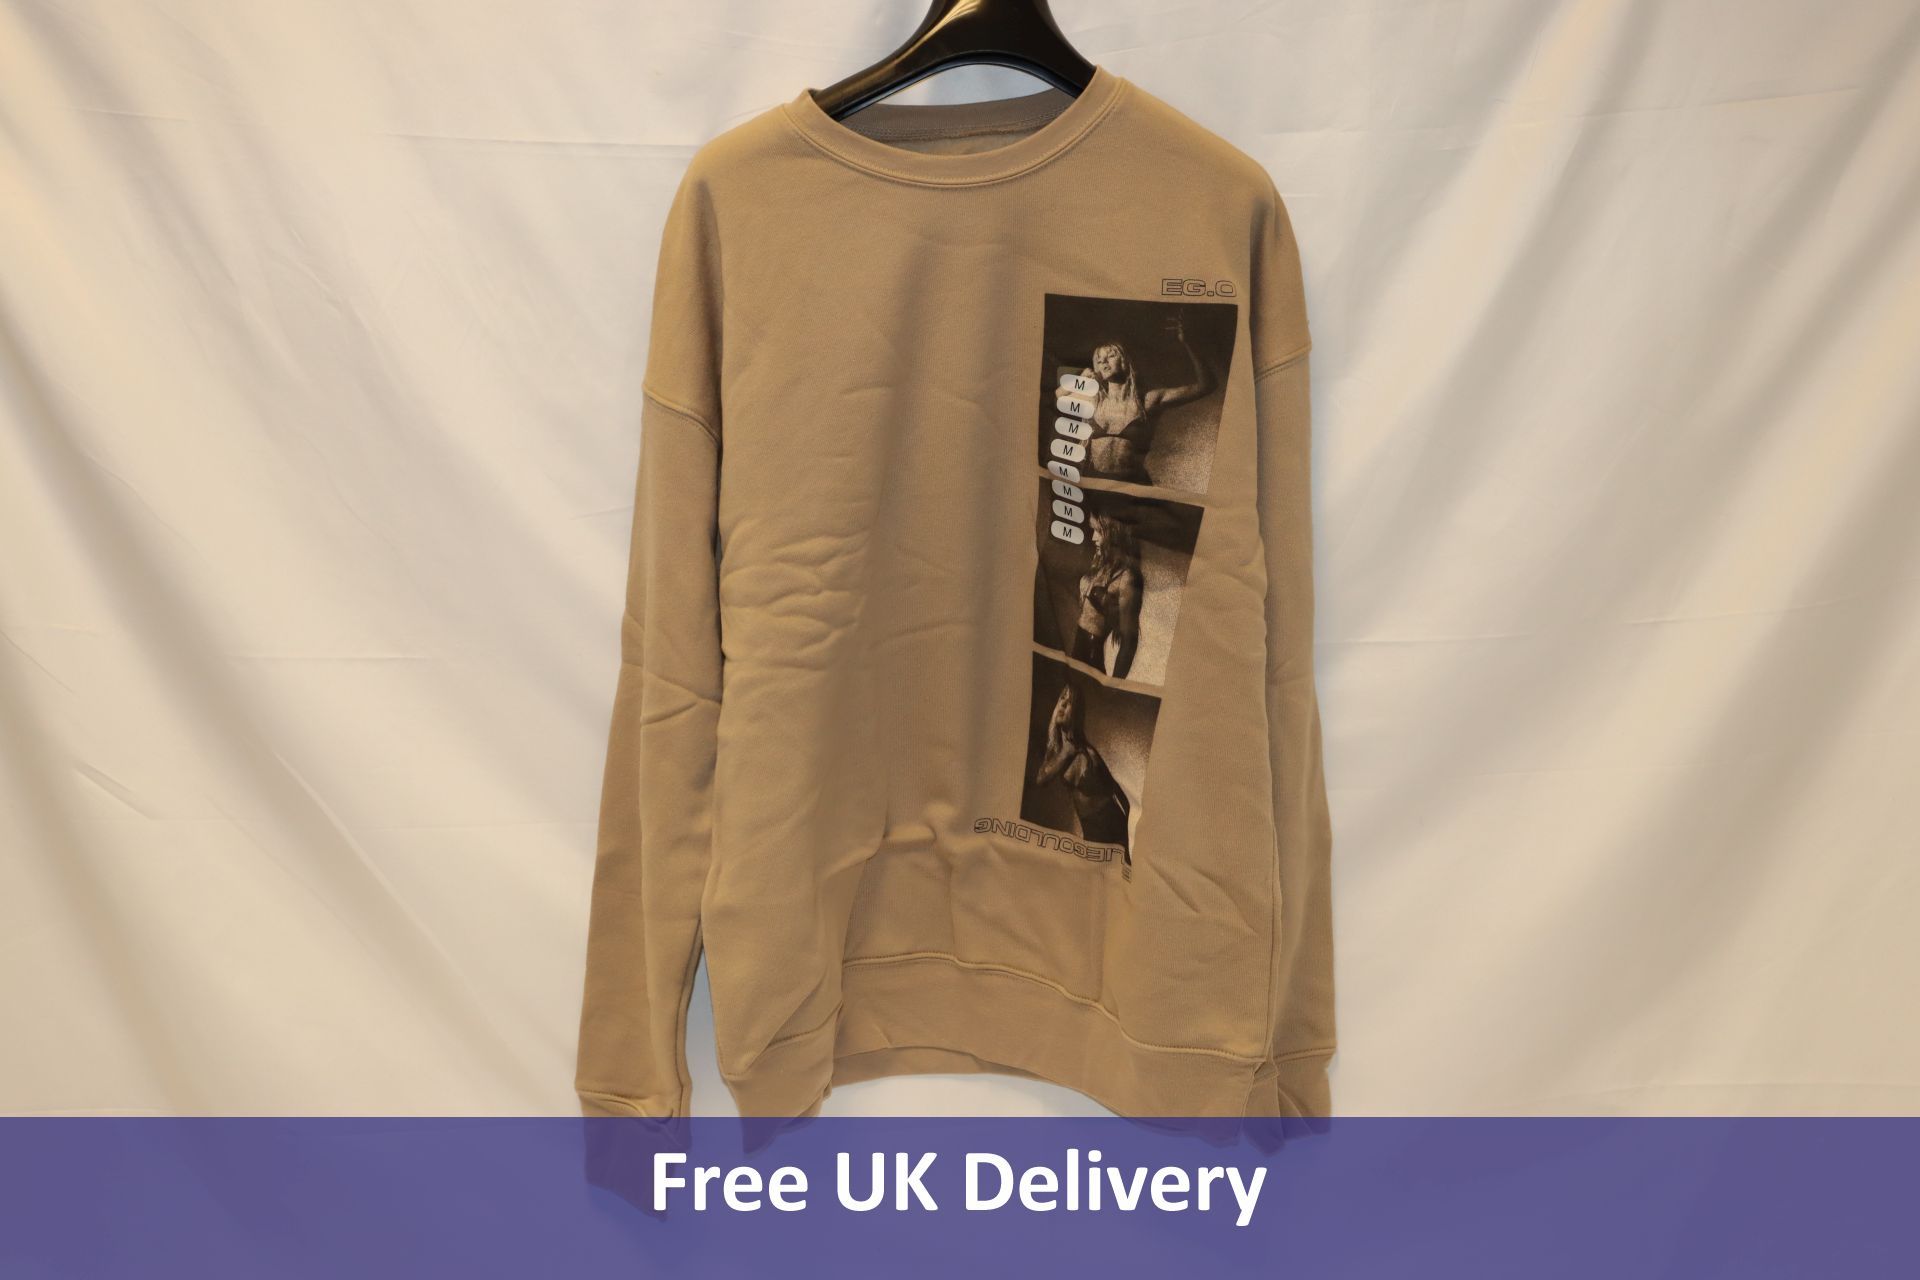 Twelve Ellie Goulding Stacked Sweatshirts, Beige, Medium